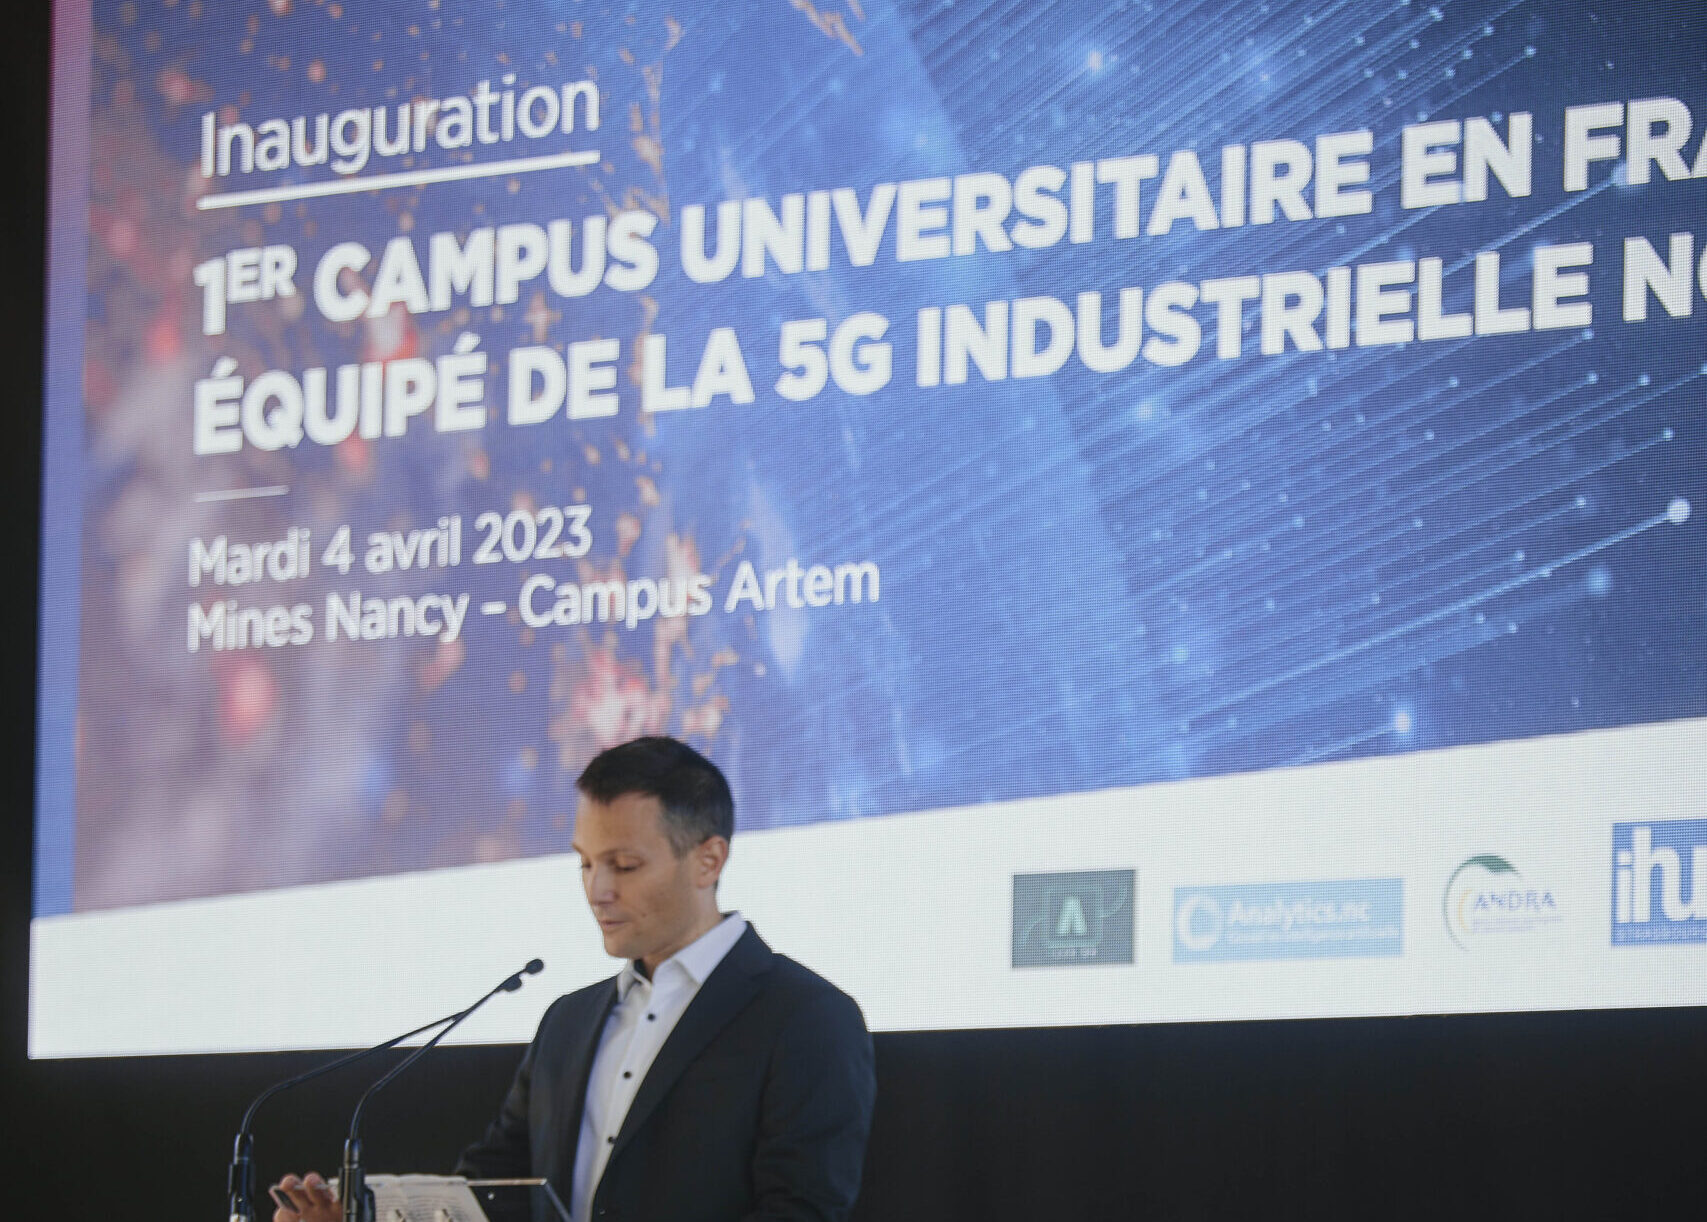 Mines Nancy s’associe à Nokia et à SNEF Telecom (EIFFAGE Energie Systèmes) pour devenir le premier campus équipé en 5G privée de France